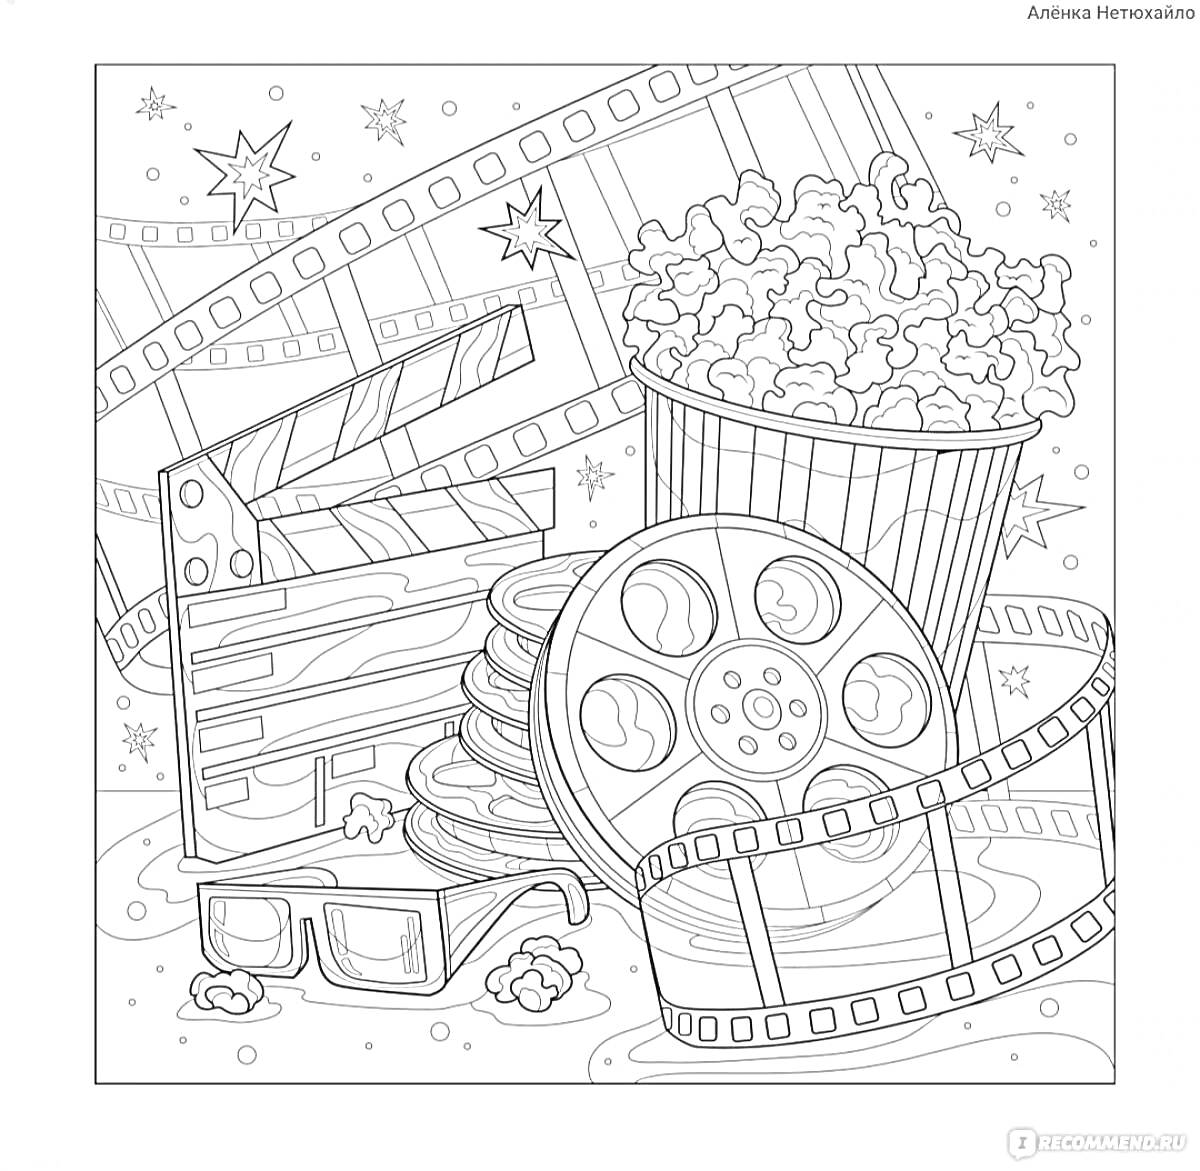 Раскраска Киноночь: попкорн, катушки с киноплёнкой, очки для 3D, хлопушка для режиссера, звёзды и кинофильмы